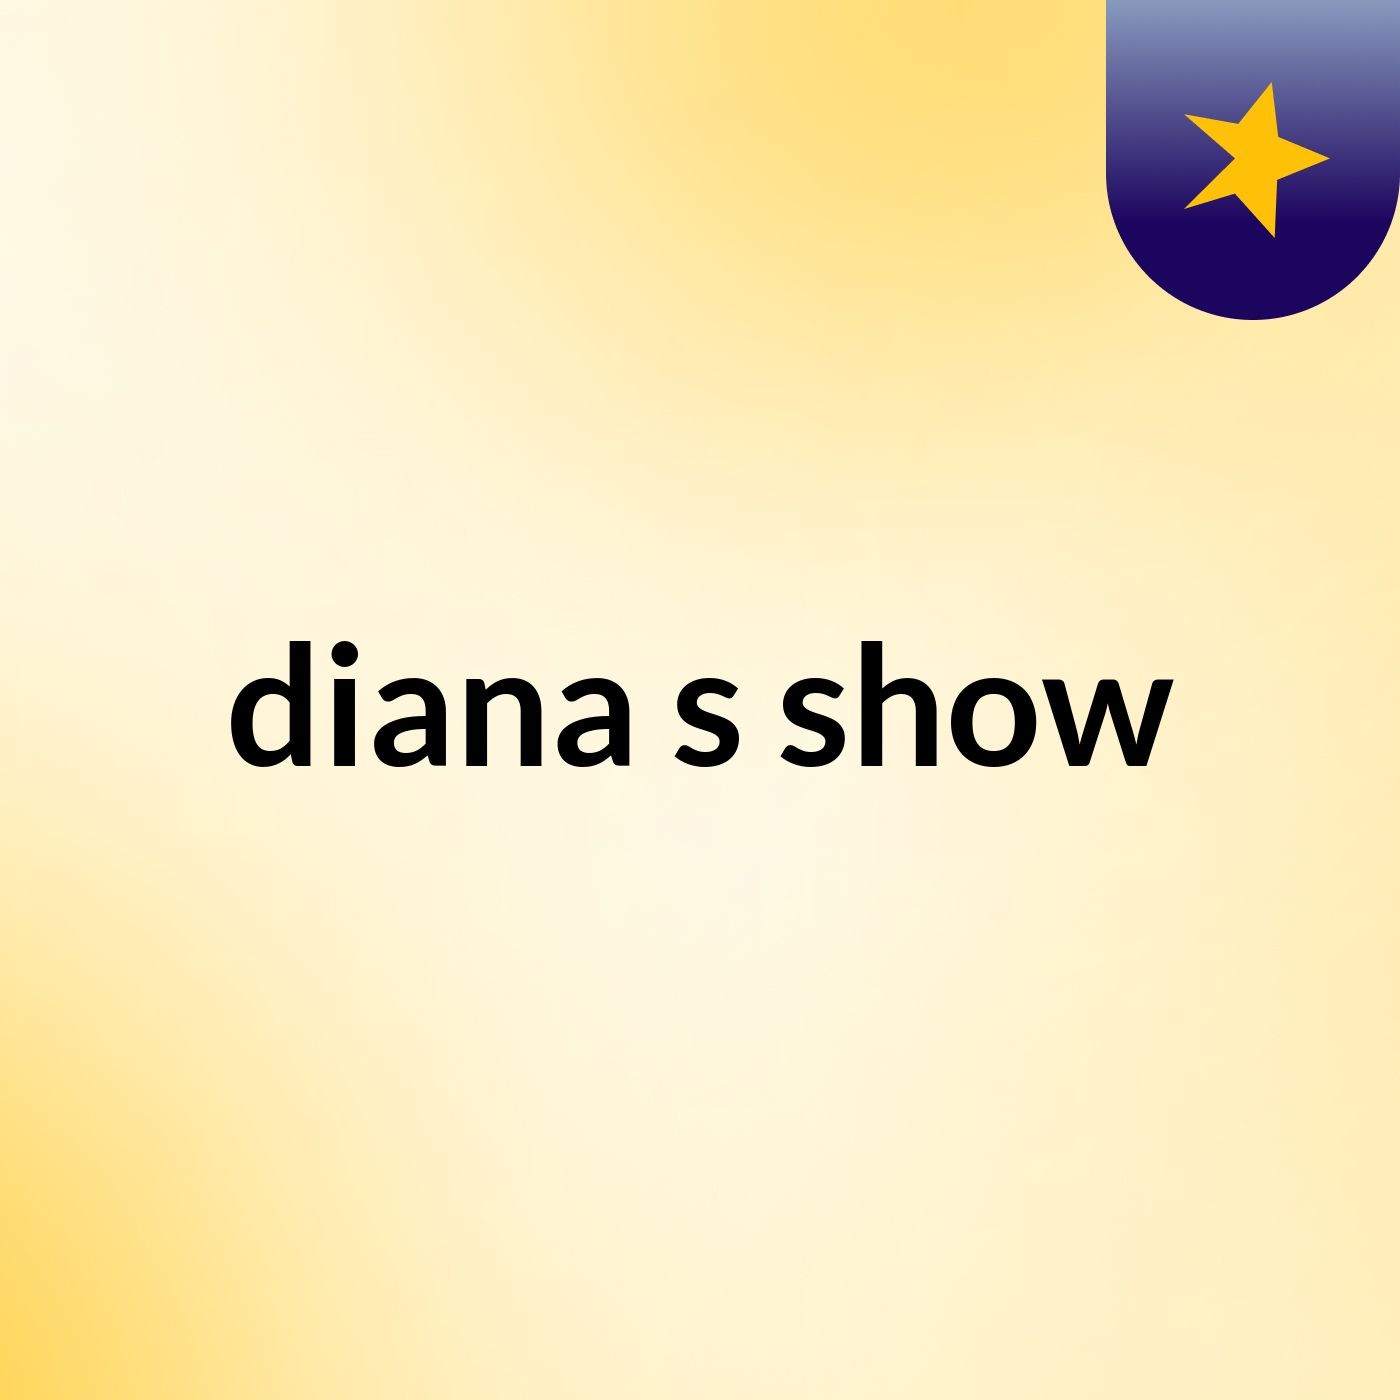 diana's show